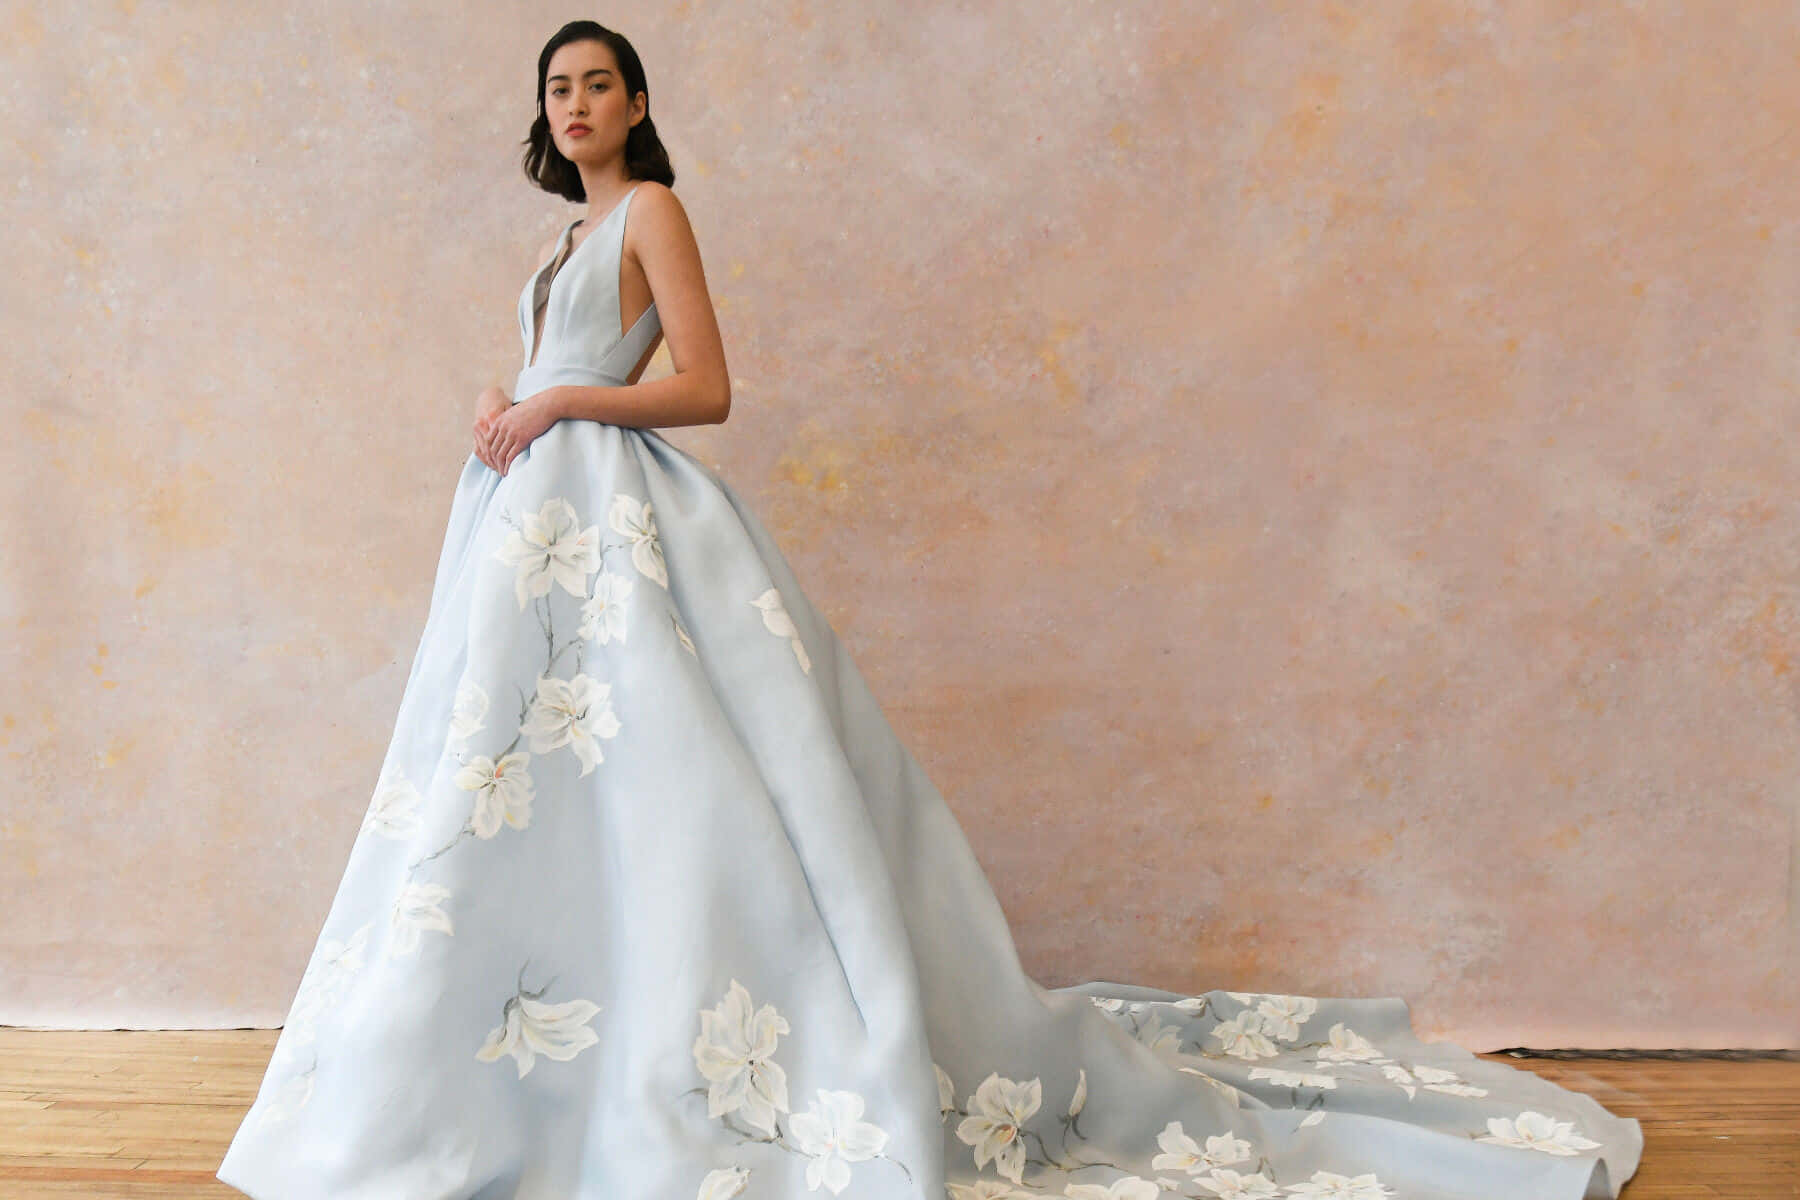 Dreamy White Lace Wedding Dress Wallpaper